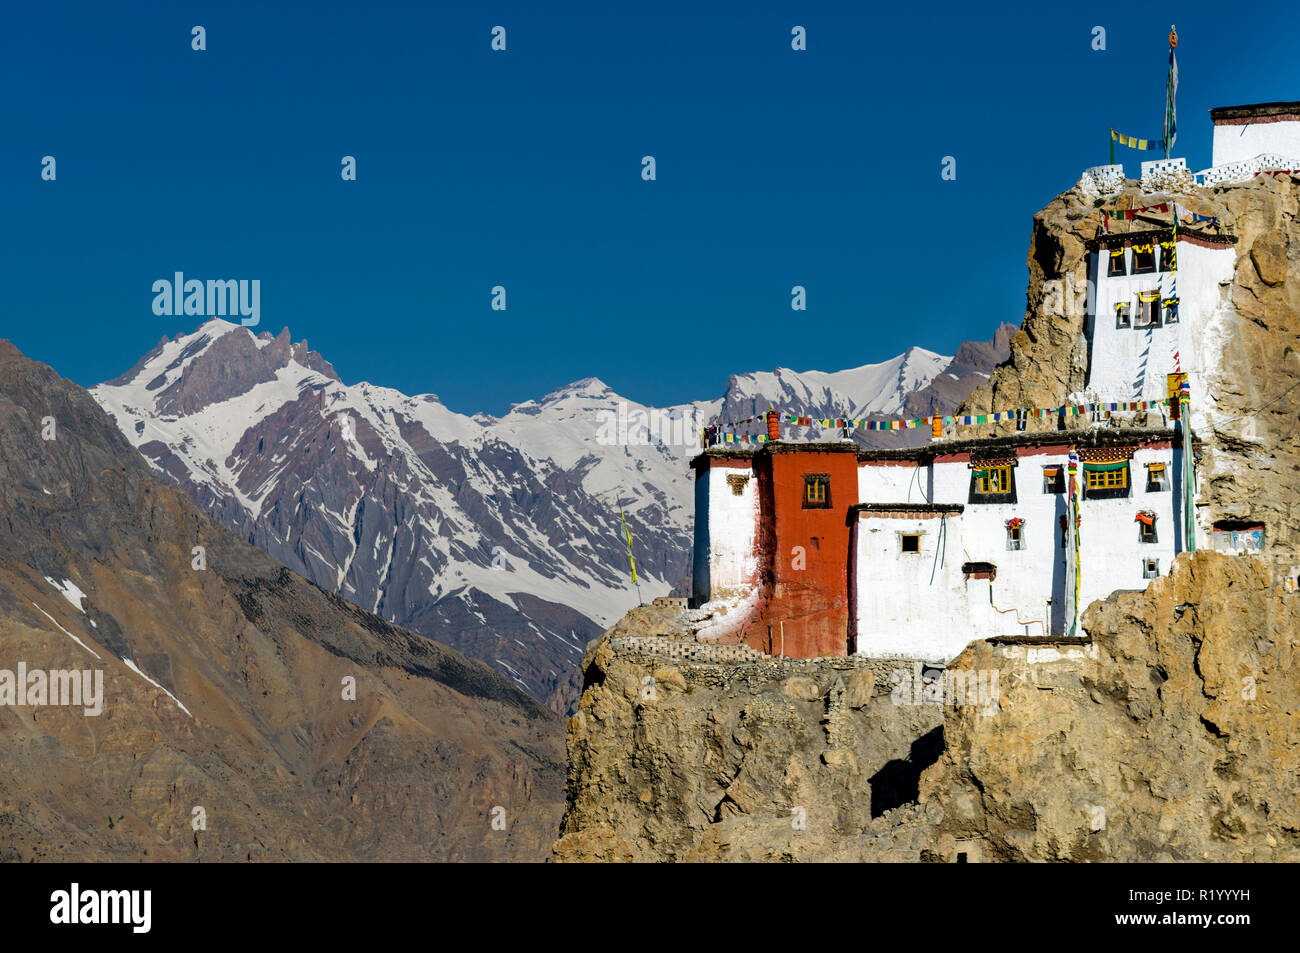 Il Gompa Dankhar, un tibetano monastero buddista, si trova in corrispondenza di una cresta rocciosa alta sopra la Spiti Valley. Montagne coperte di neve in background Foto Stock